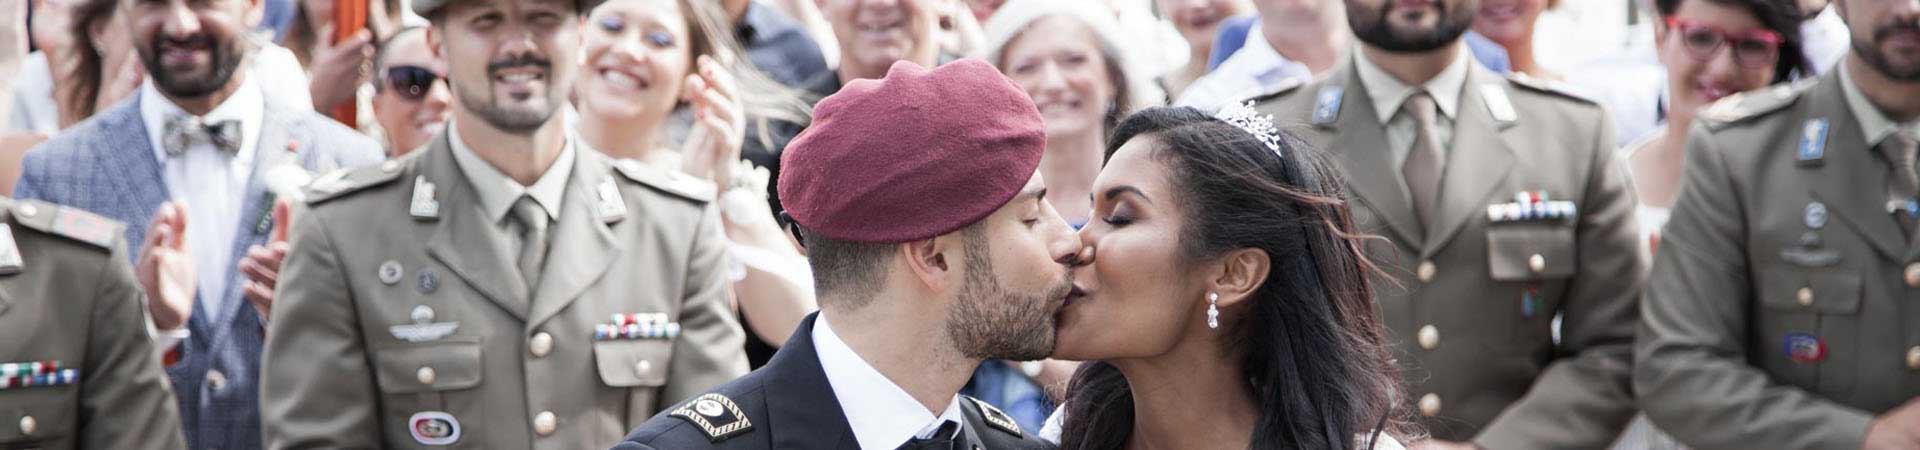 matrimonio con sposi in divisa militare